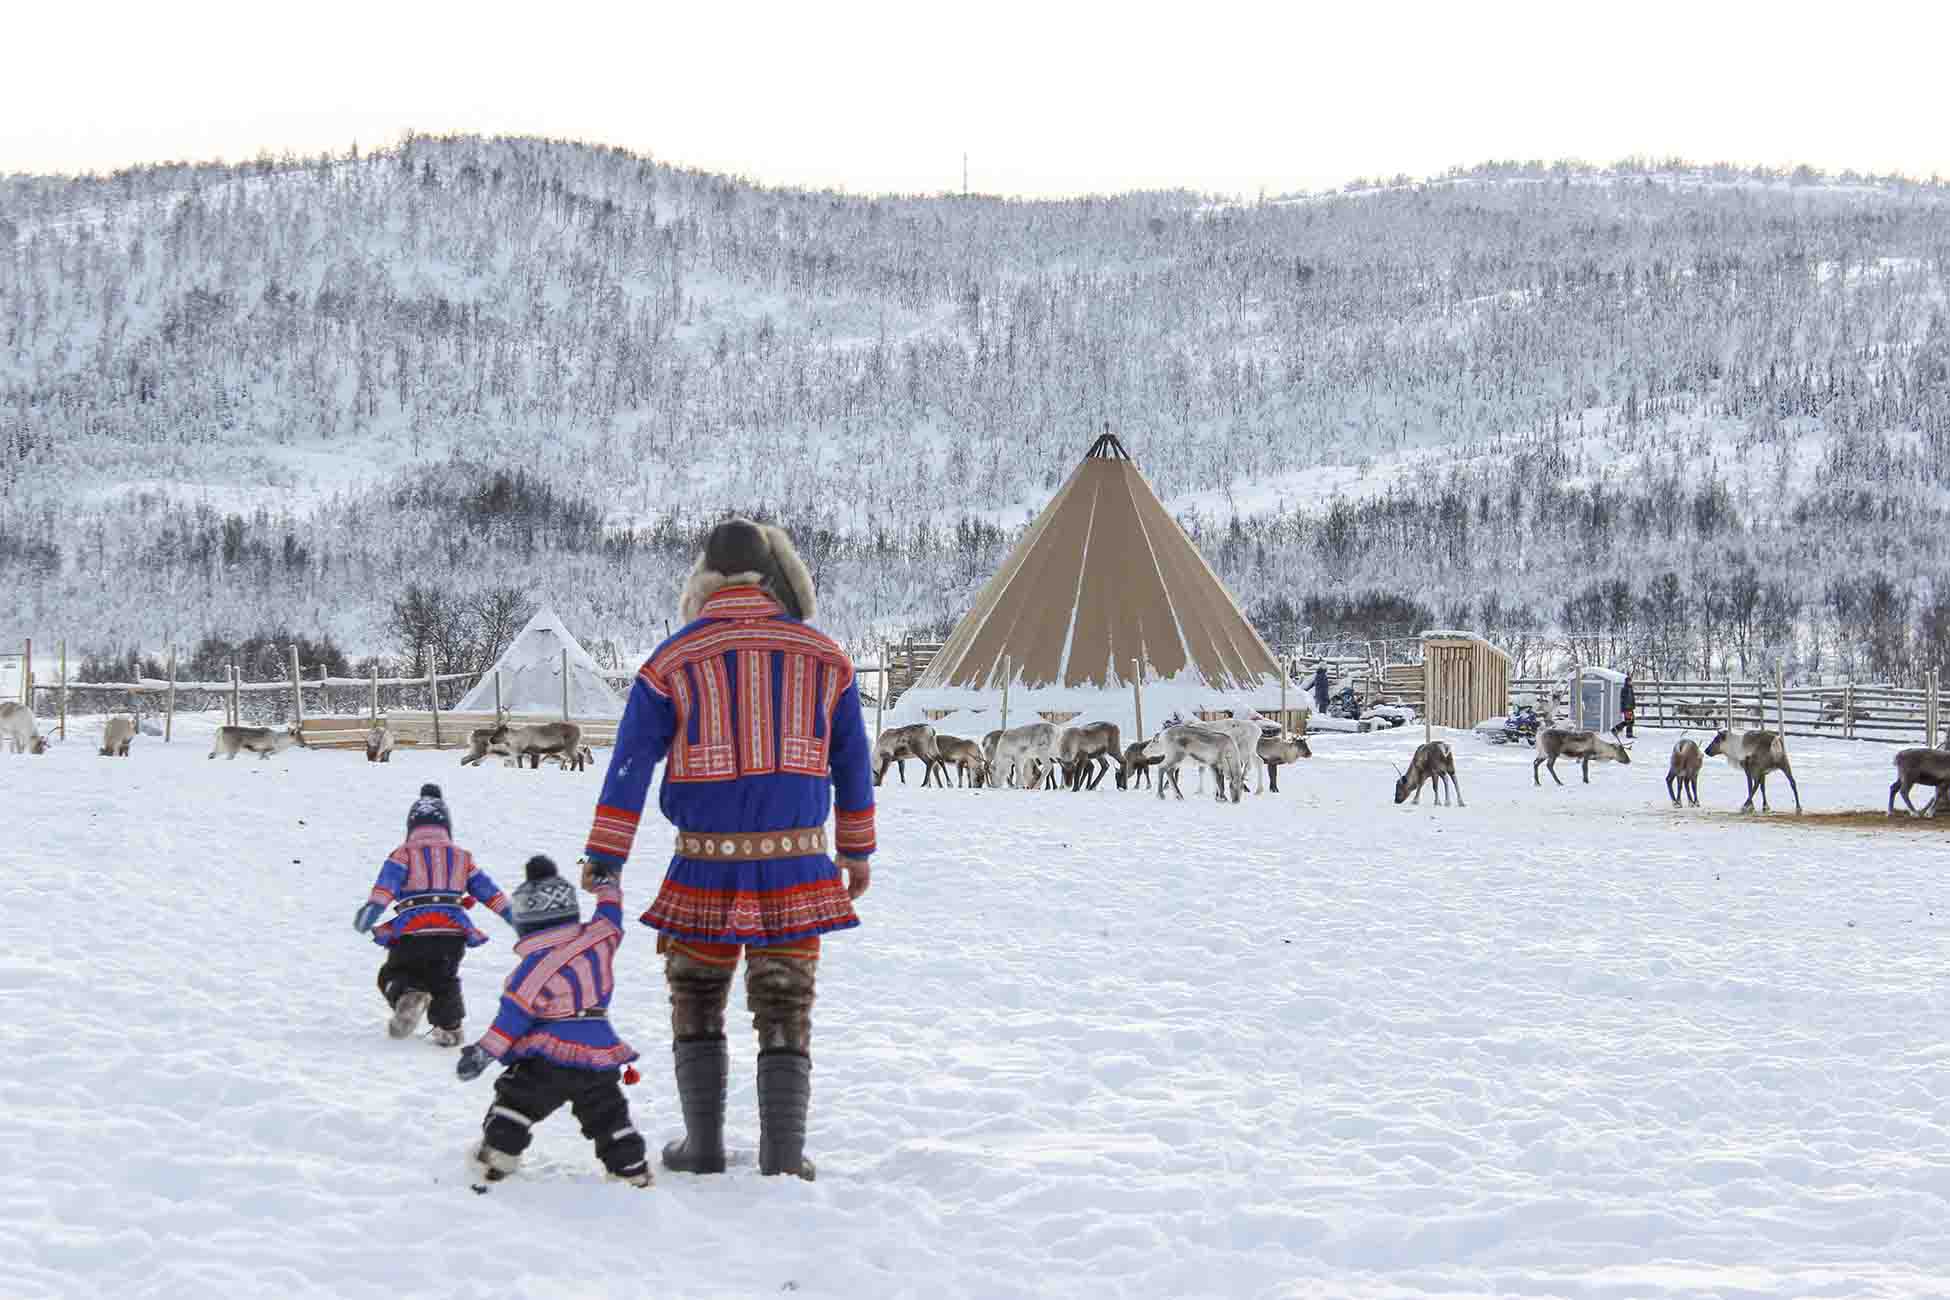 Rencontre avec les samis - croisière Laponie